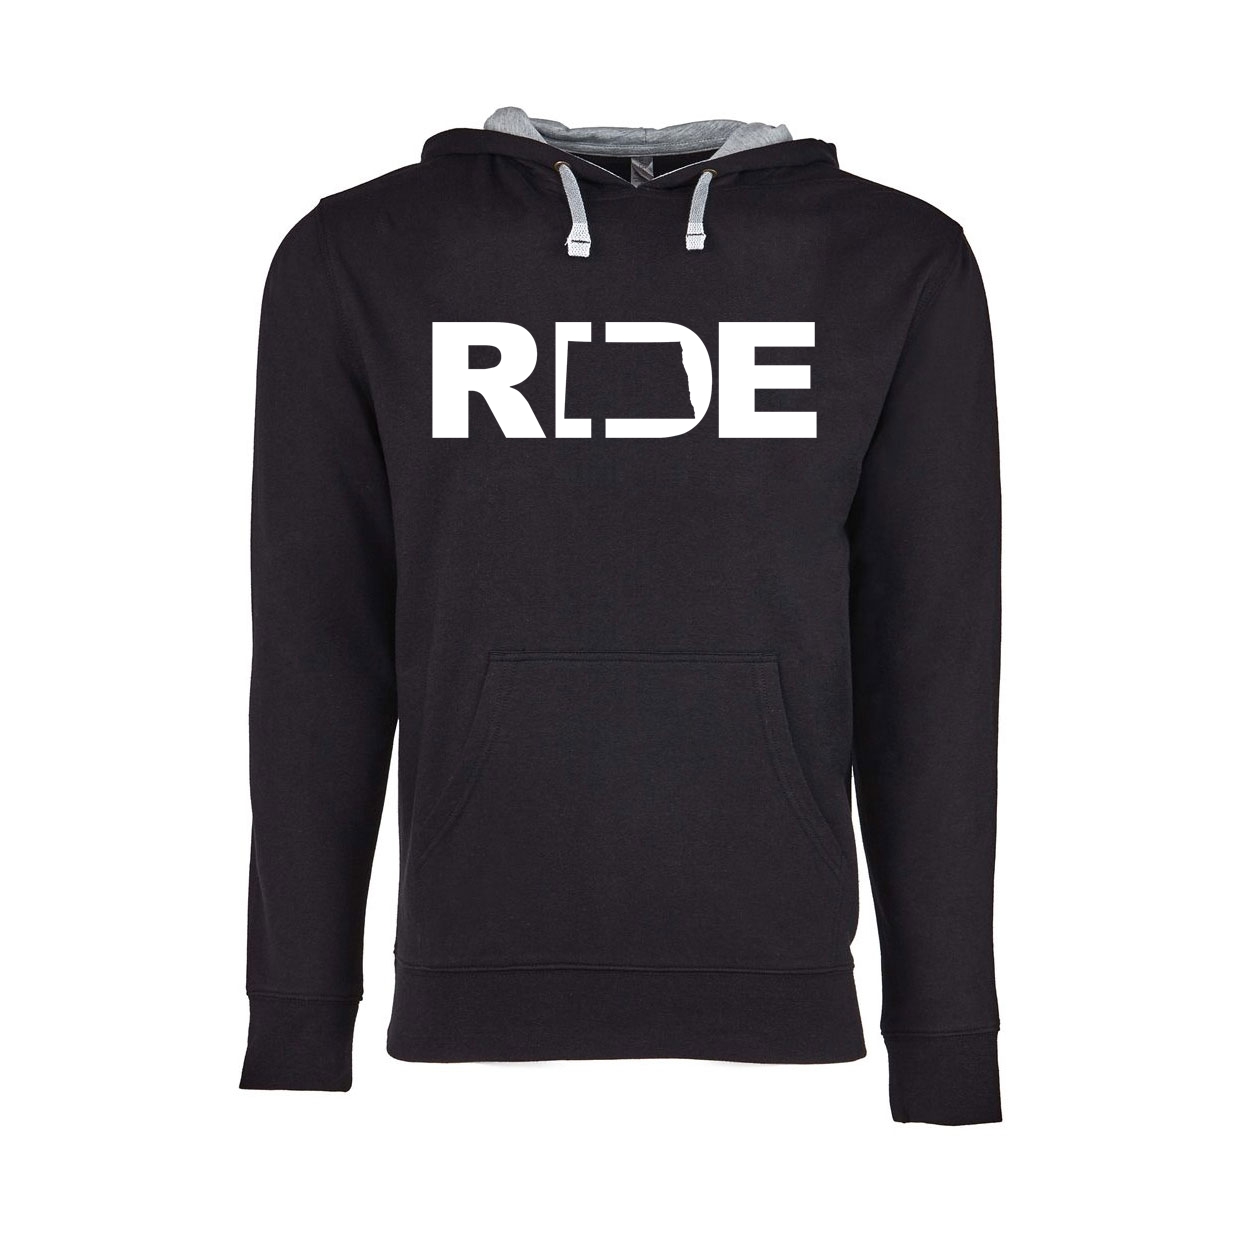 Ride North Dakota Classic Lightweight Sweatshirt Black/Heather Gray (White Logo)